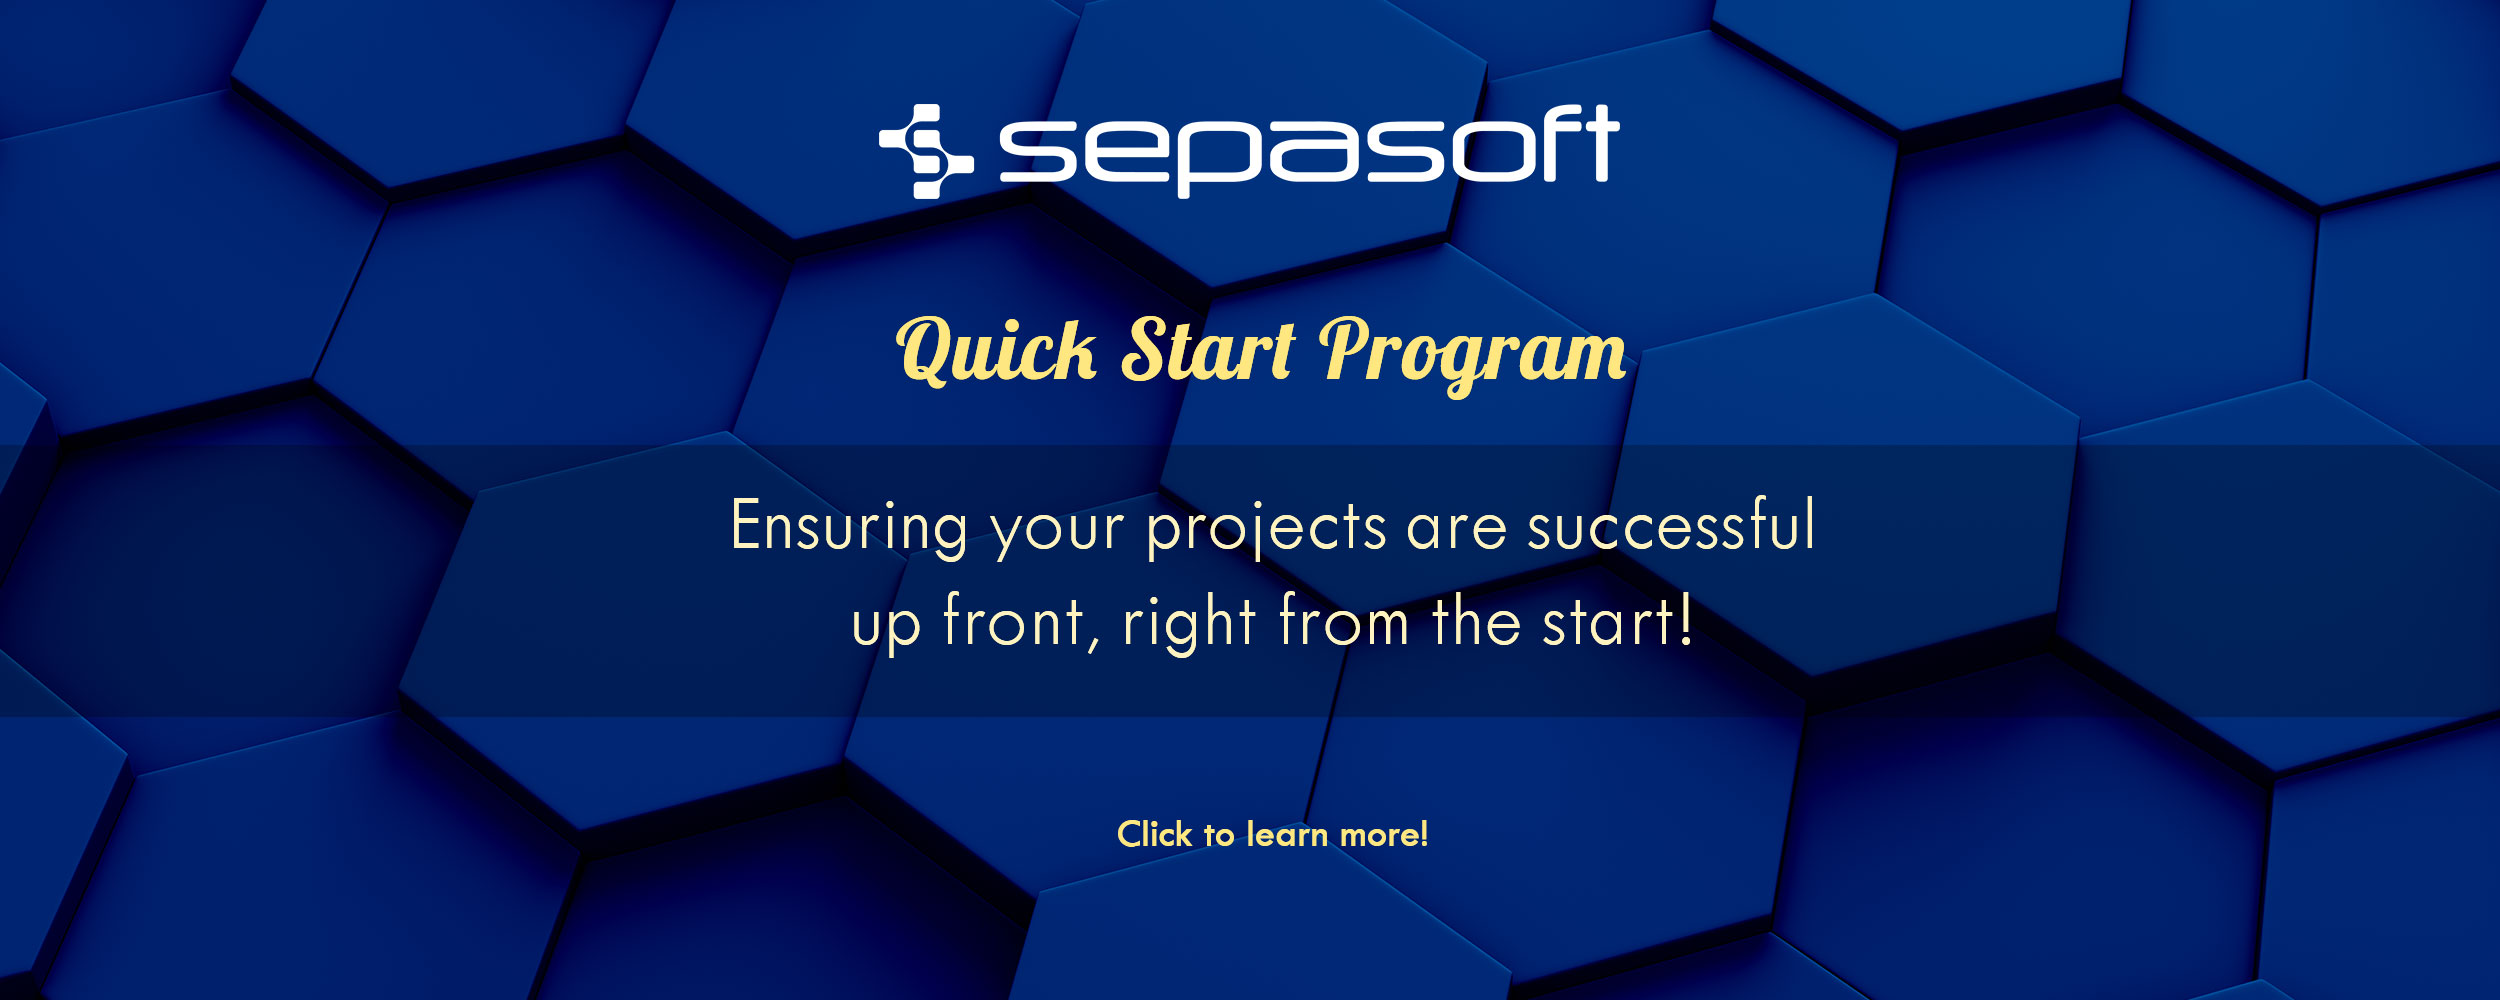 Sepasoft news banner